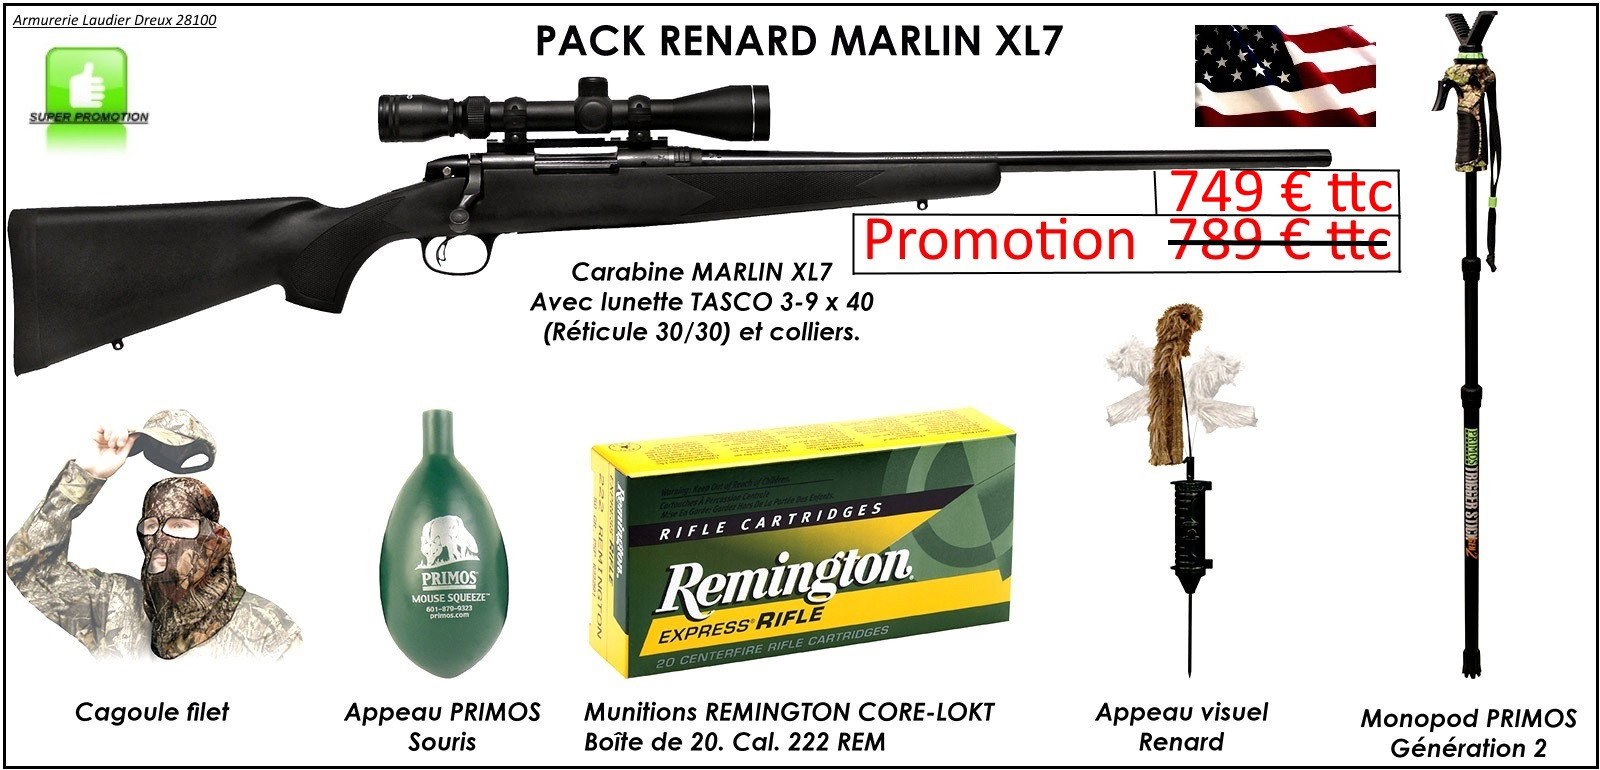  Carabine Marlin-Mod. XL 7-Cal 222 Rem-Kit Pack Renard+ Avec  KIT Lunette 3x9x40+ montage+Munitions+ Appeaux renard+ cagoule-Promotion-Ref 24388